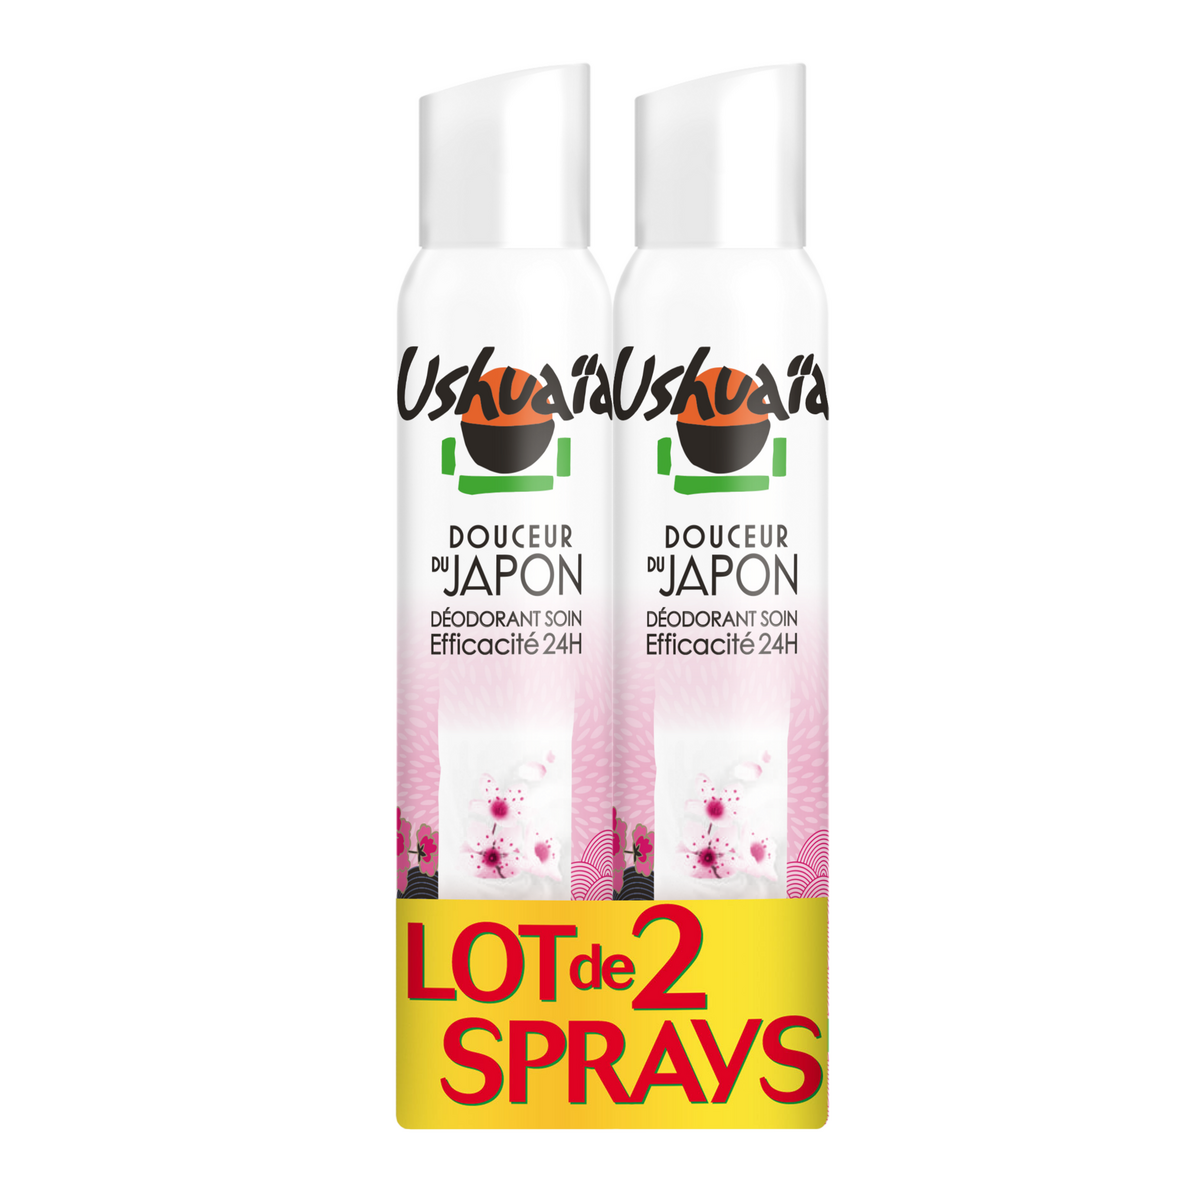 USHUAIA Déodorant soin spray douceur du Japon efficacité 24h 2x200ml